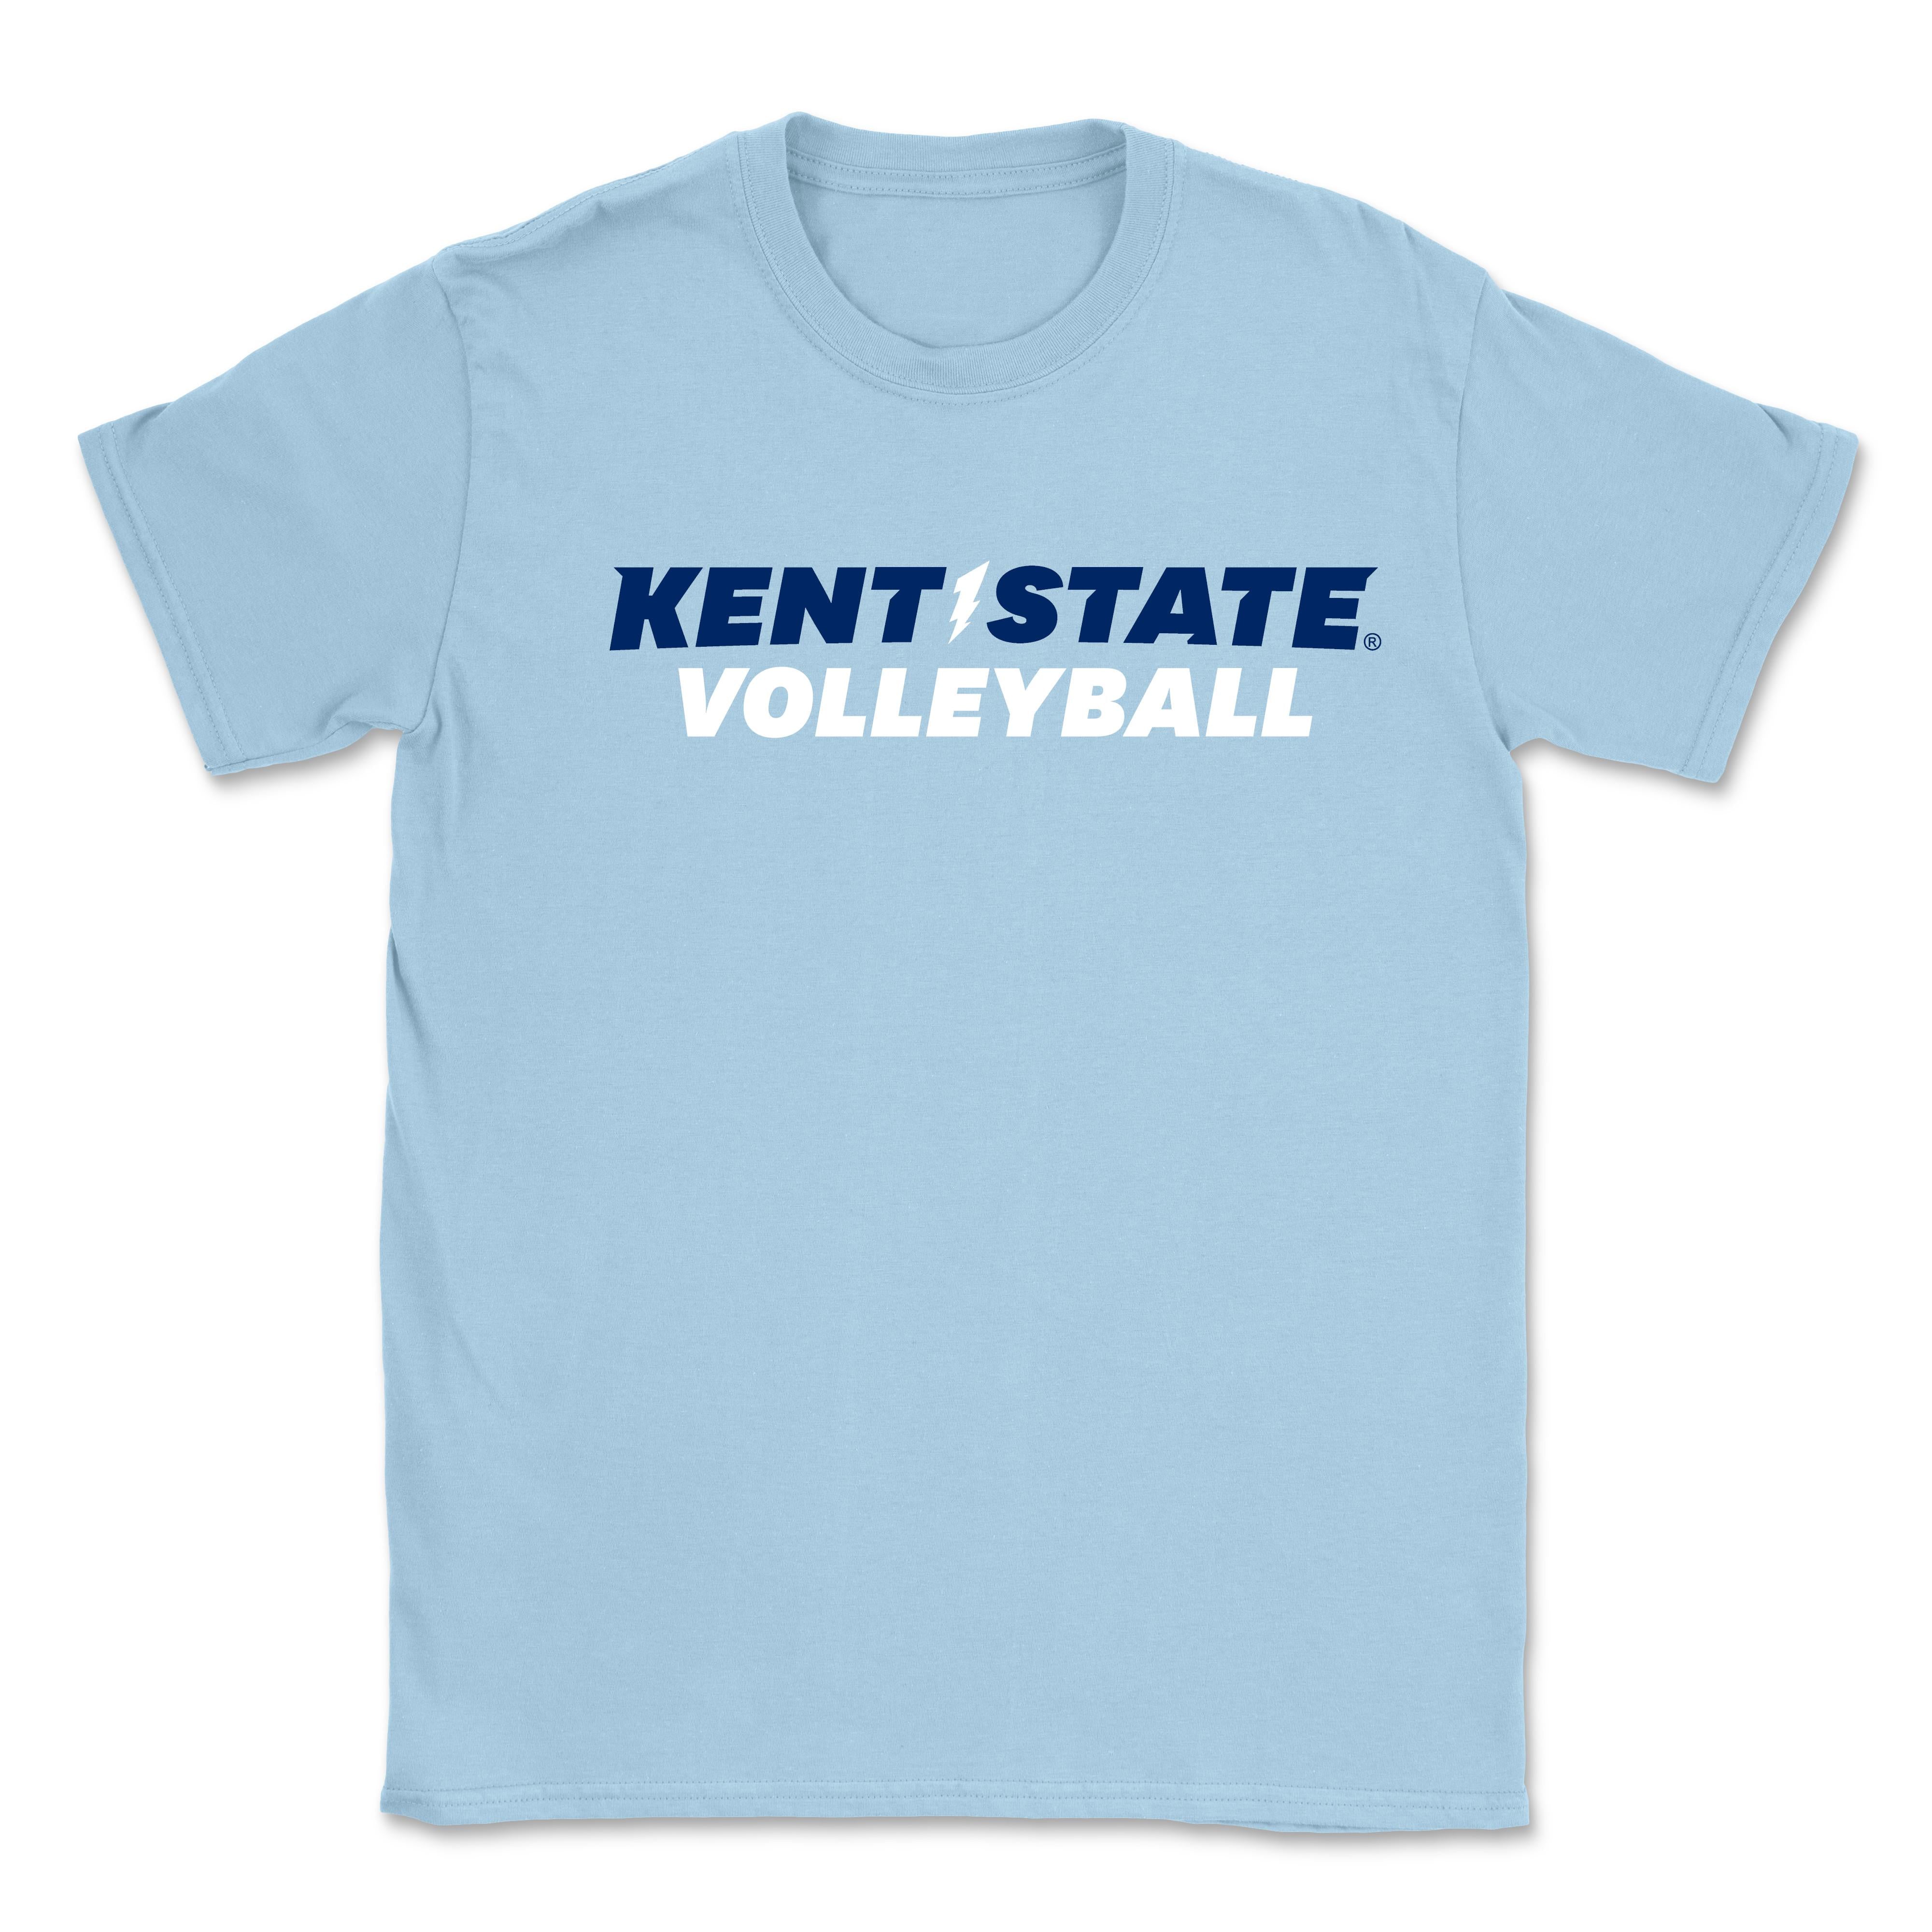 Kent State Light Blue Volleyball T-Shirt